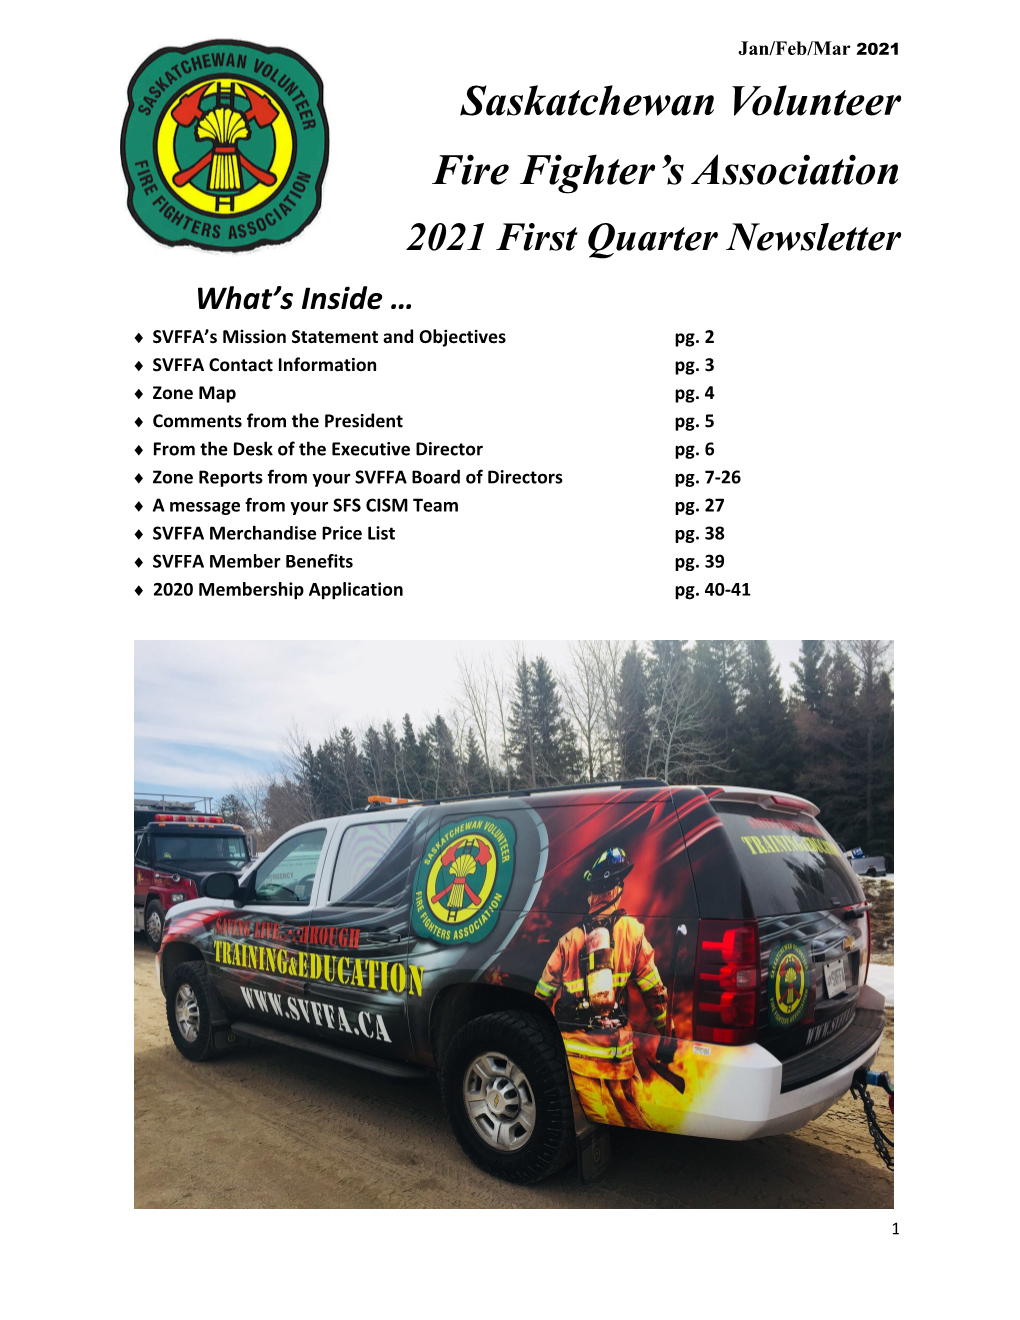 Saskatchewan Volunteer Fire Fighter's Association